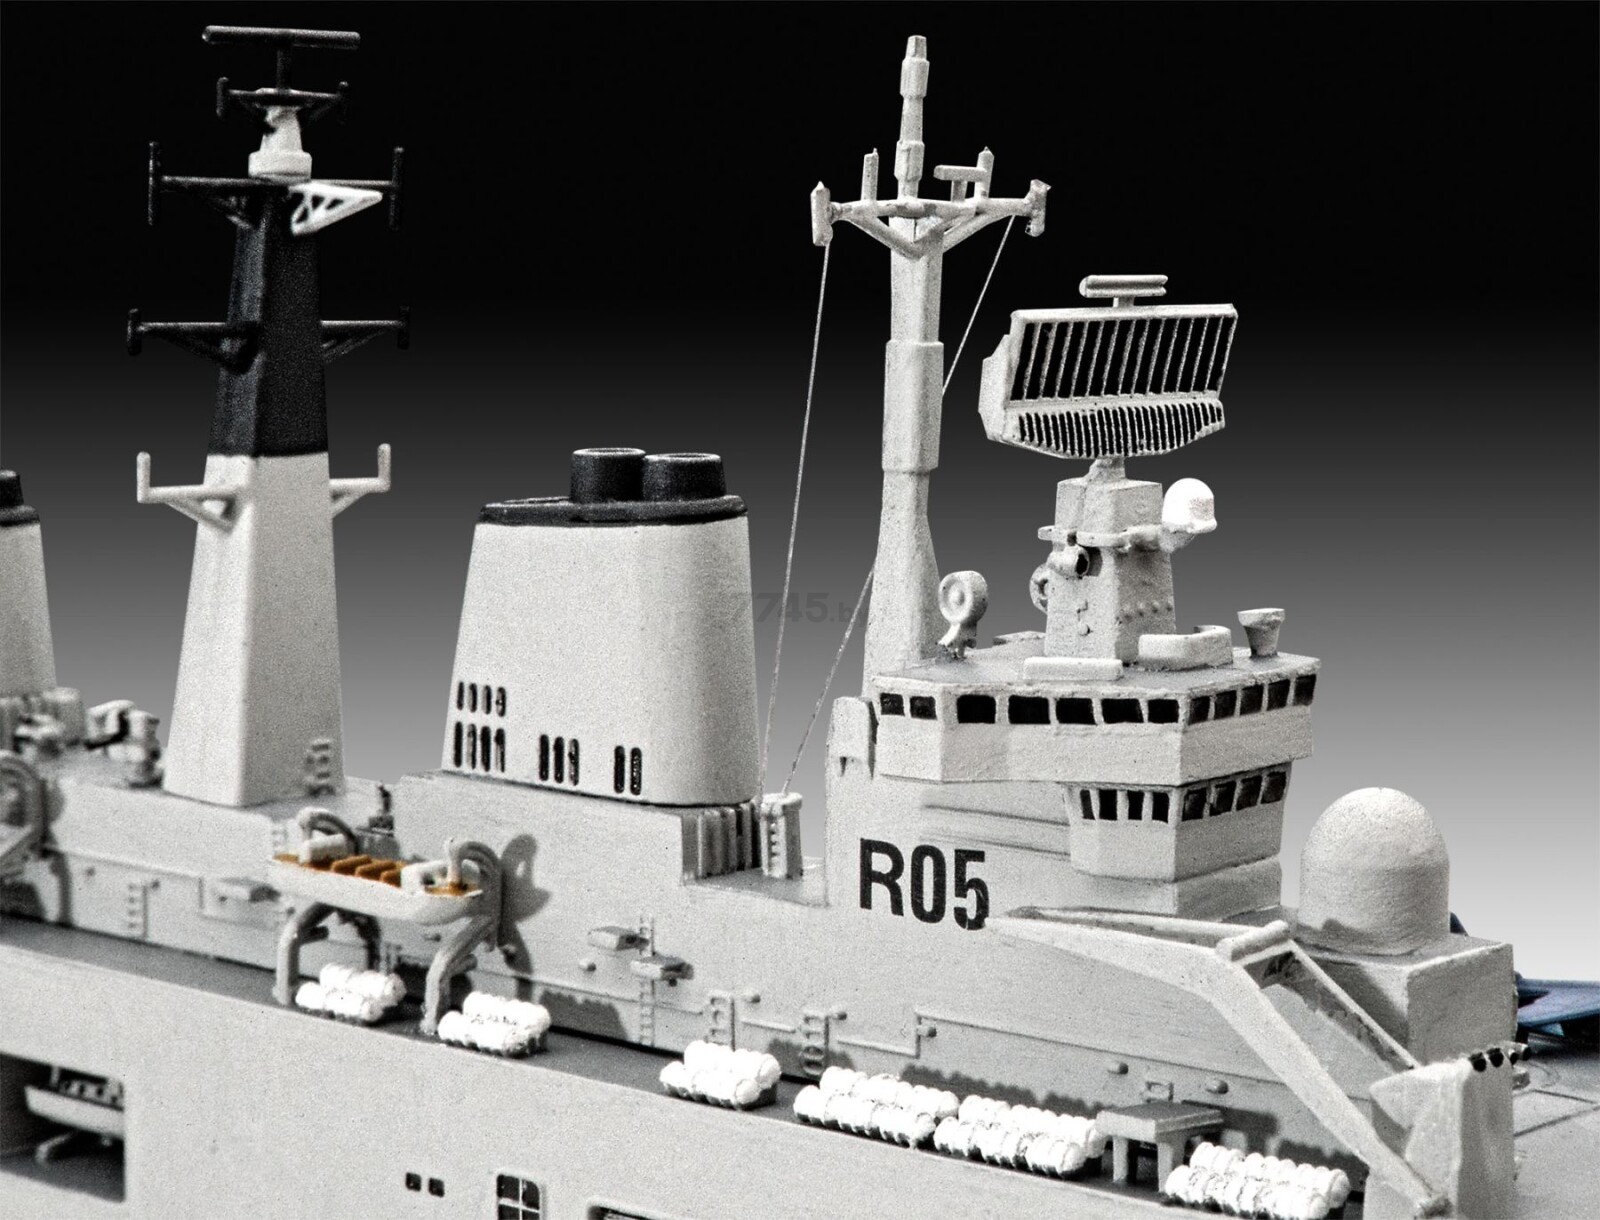 Сборная модель REVELL Авианосец HMS Invincible Фолклендская война 1:700 (5172) - Фото 3